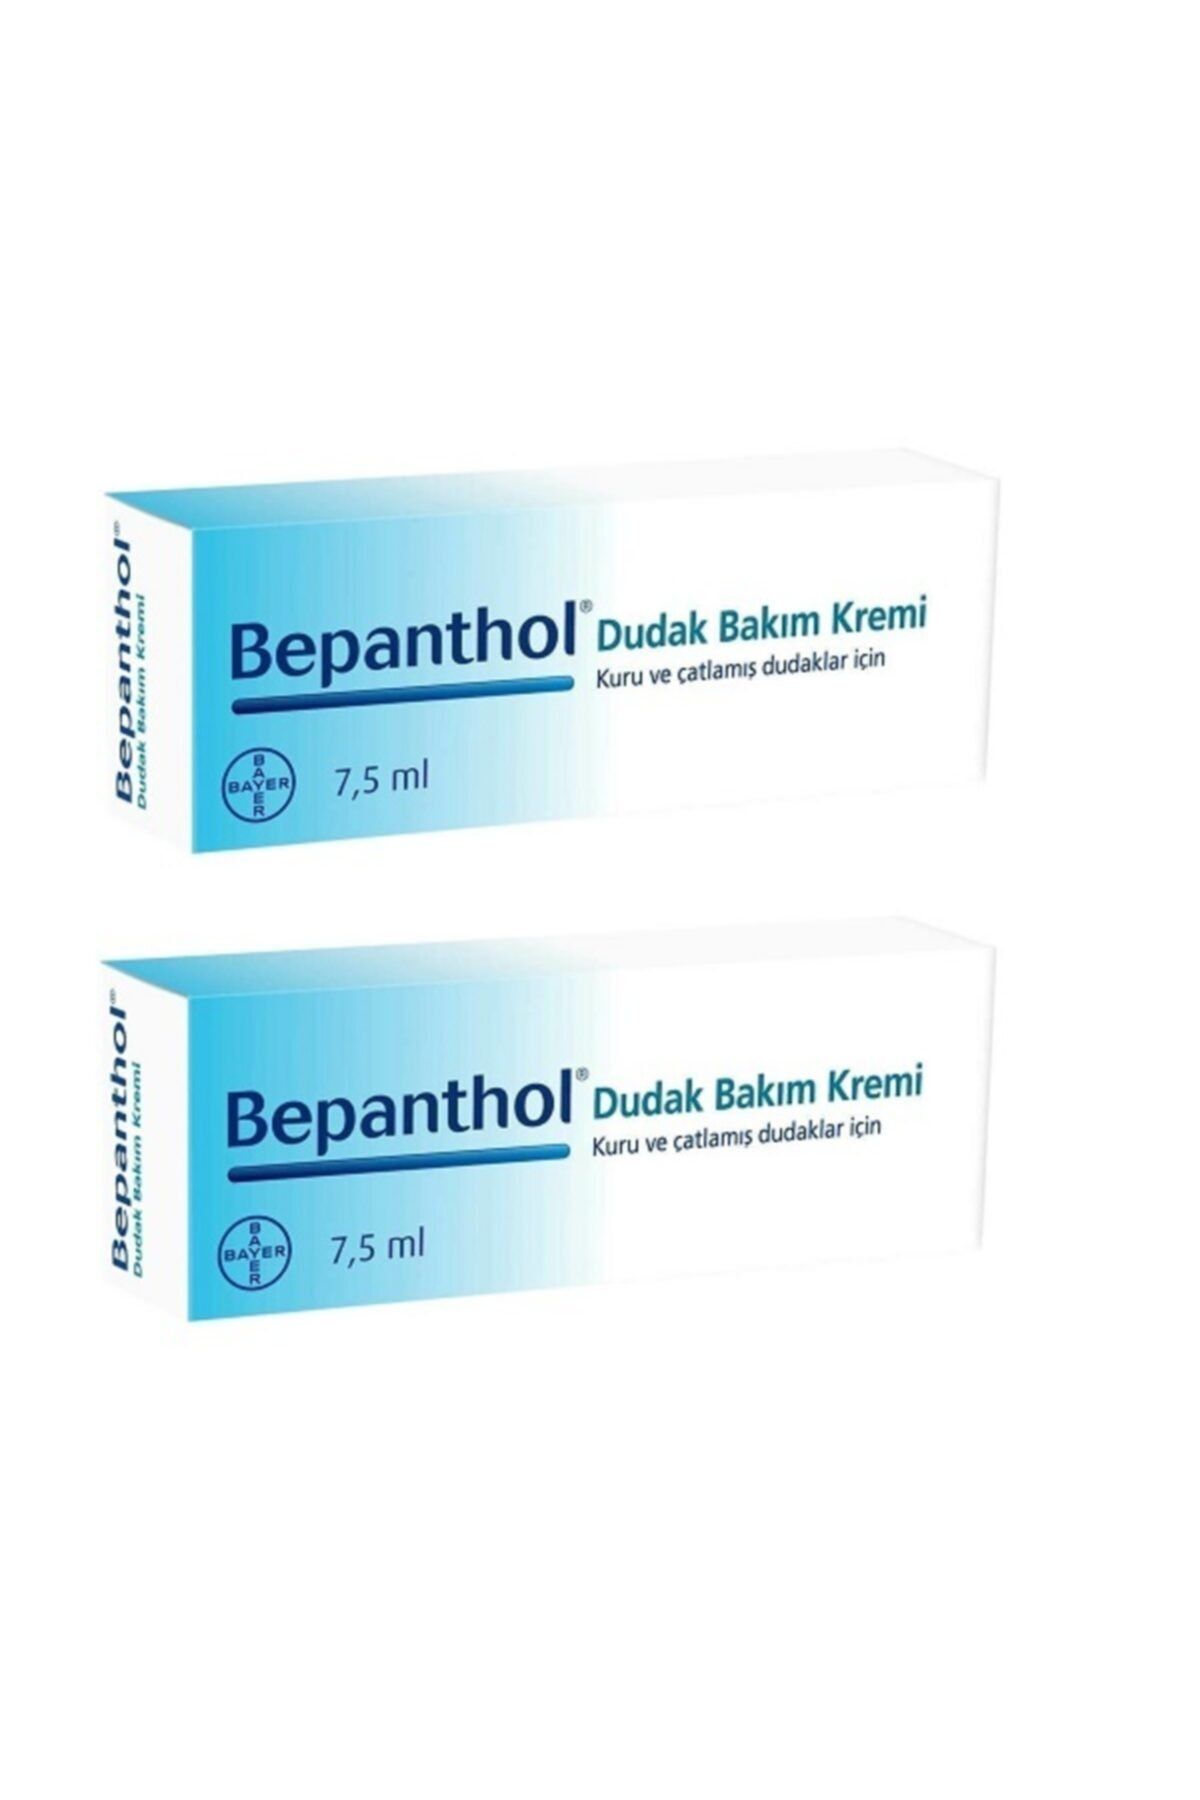 Bepanthol E Vitamini Içeren Dudak Bakım Kremi 7.5 Ml - 2'li Paket